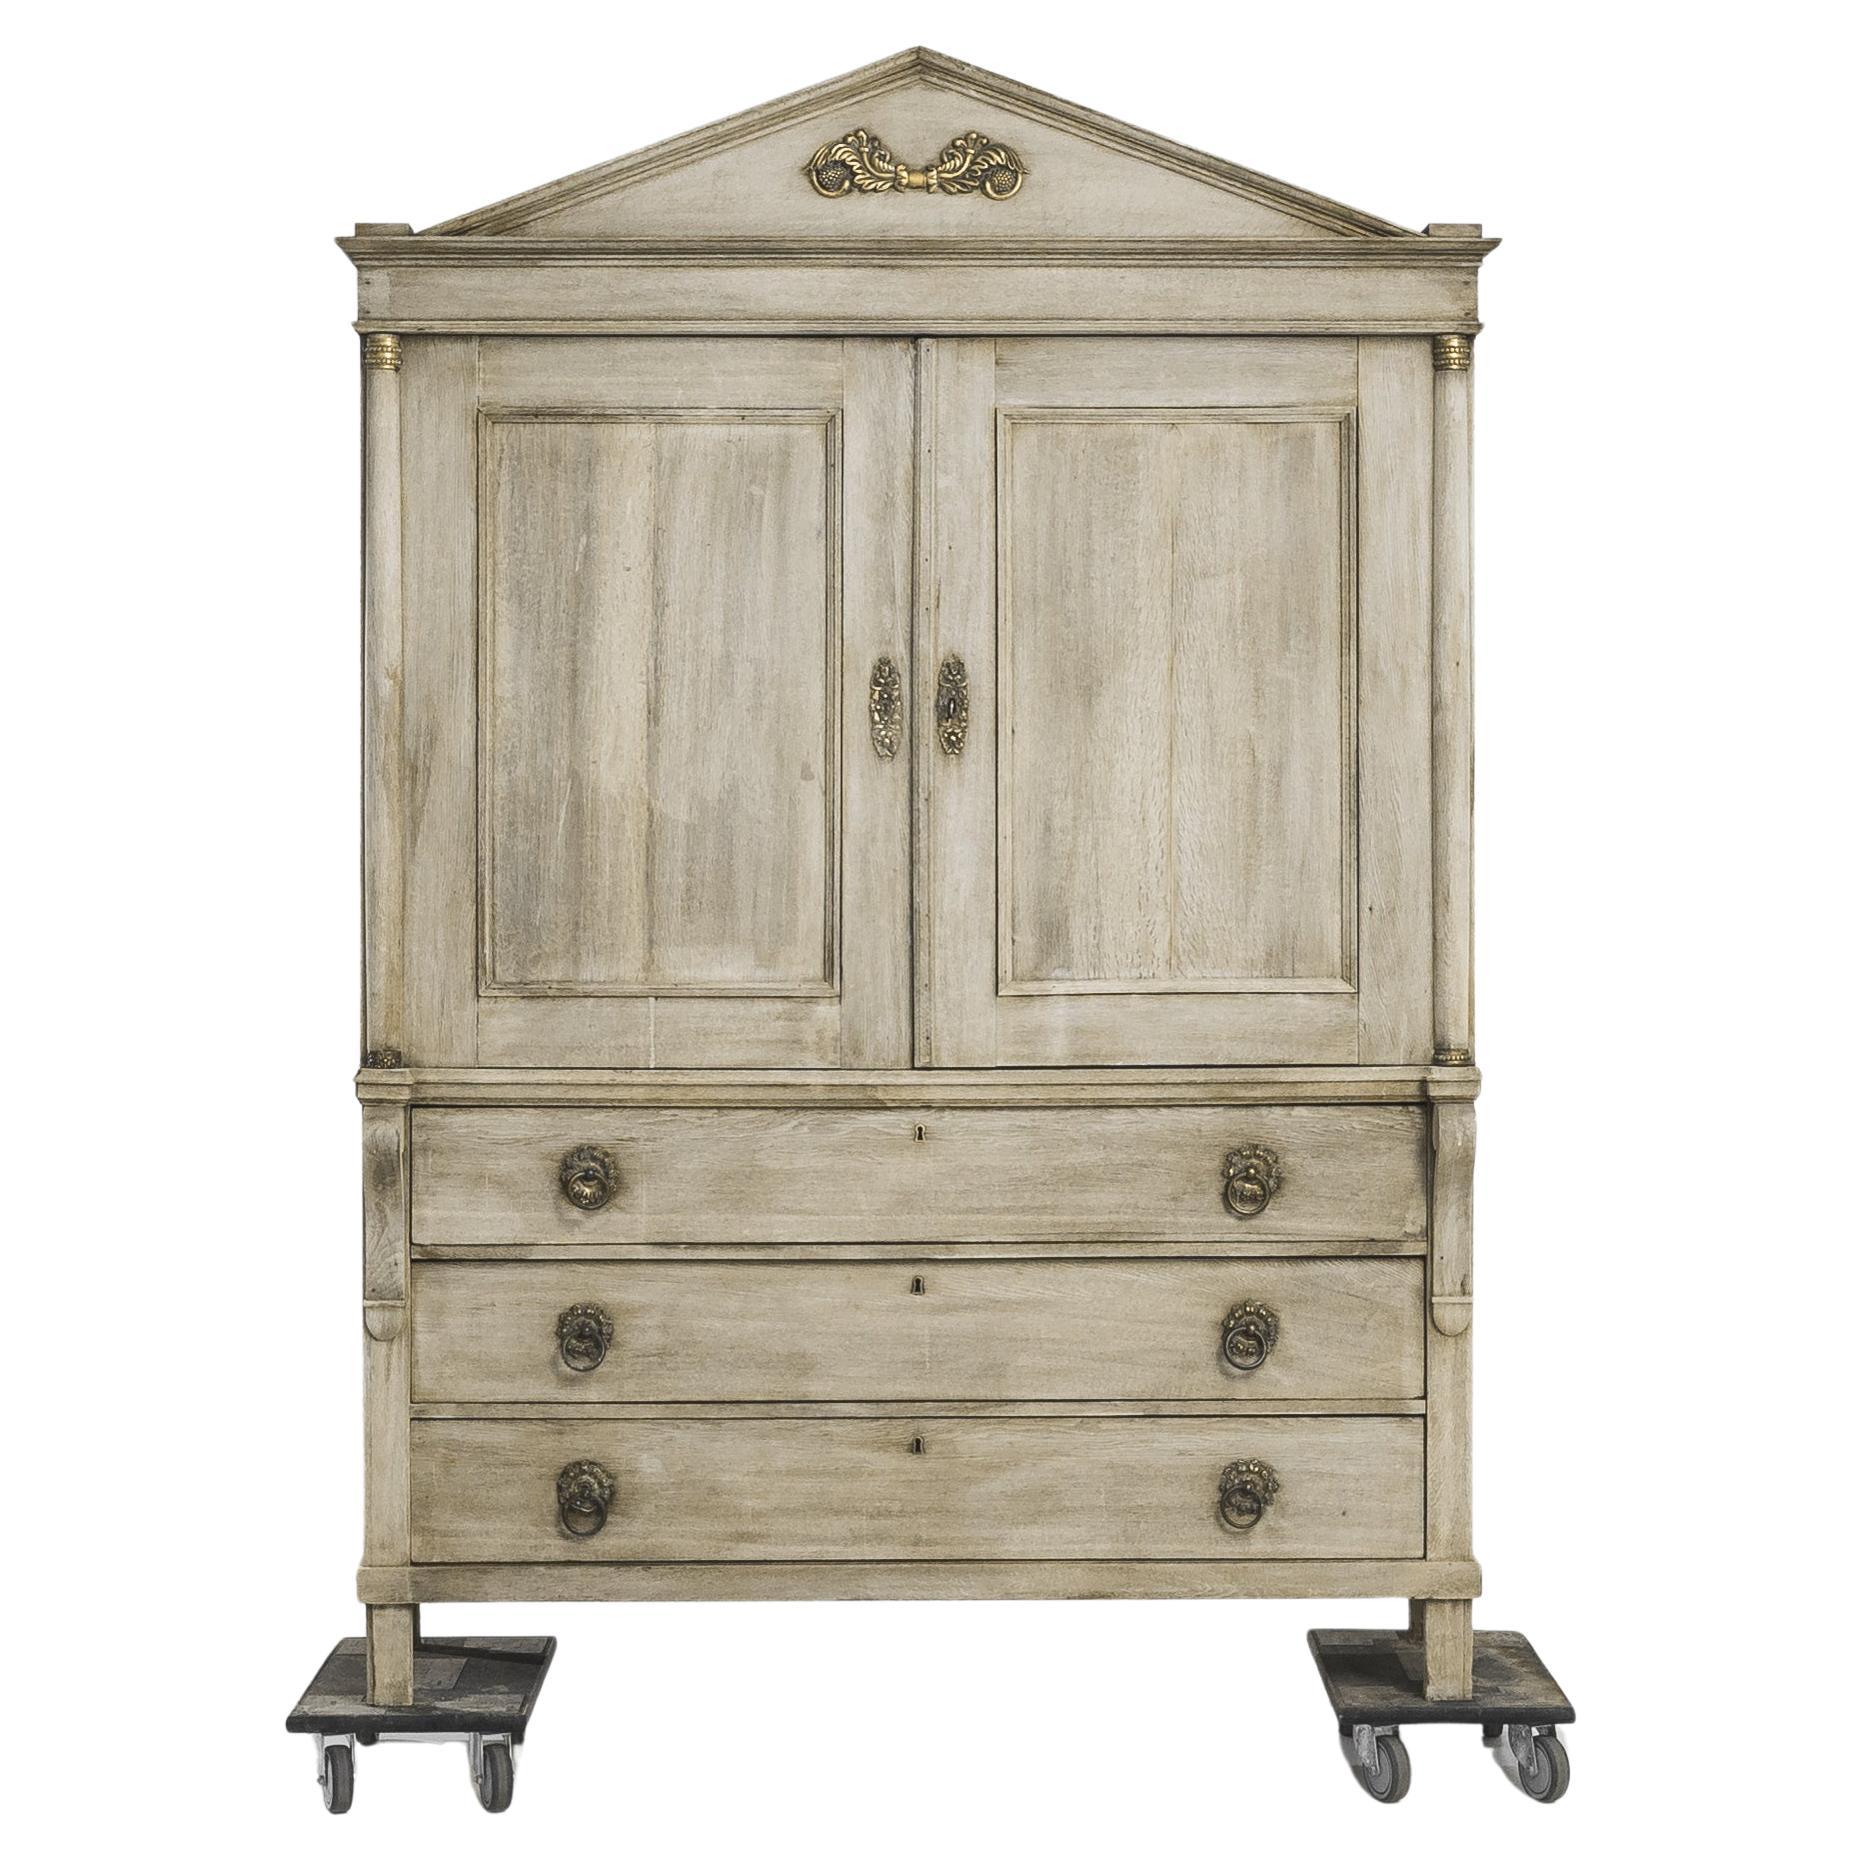 Cette armoire hollandaise en chêne blanchi datant des années 1800 est un parfait exemple d'artisanat et de design intemporel. Le meuble est orné de somptueux accents dorés et possède deux portes principales qui s'ouvrent pour révéler deux étagères